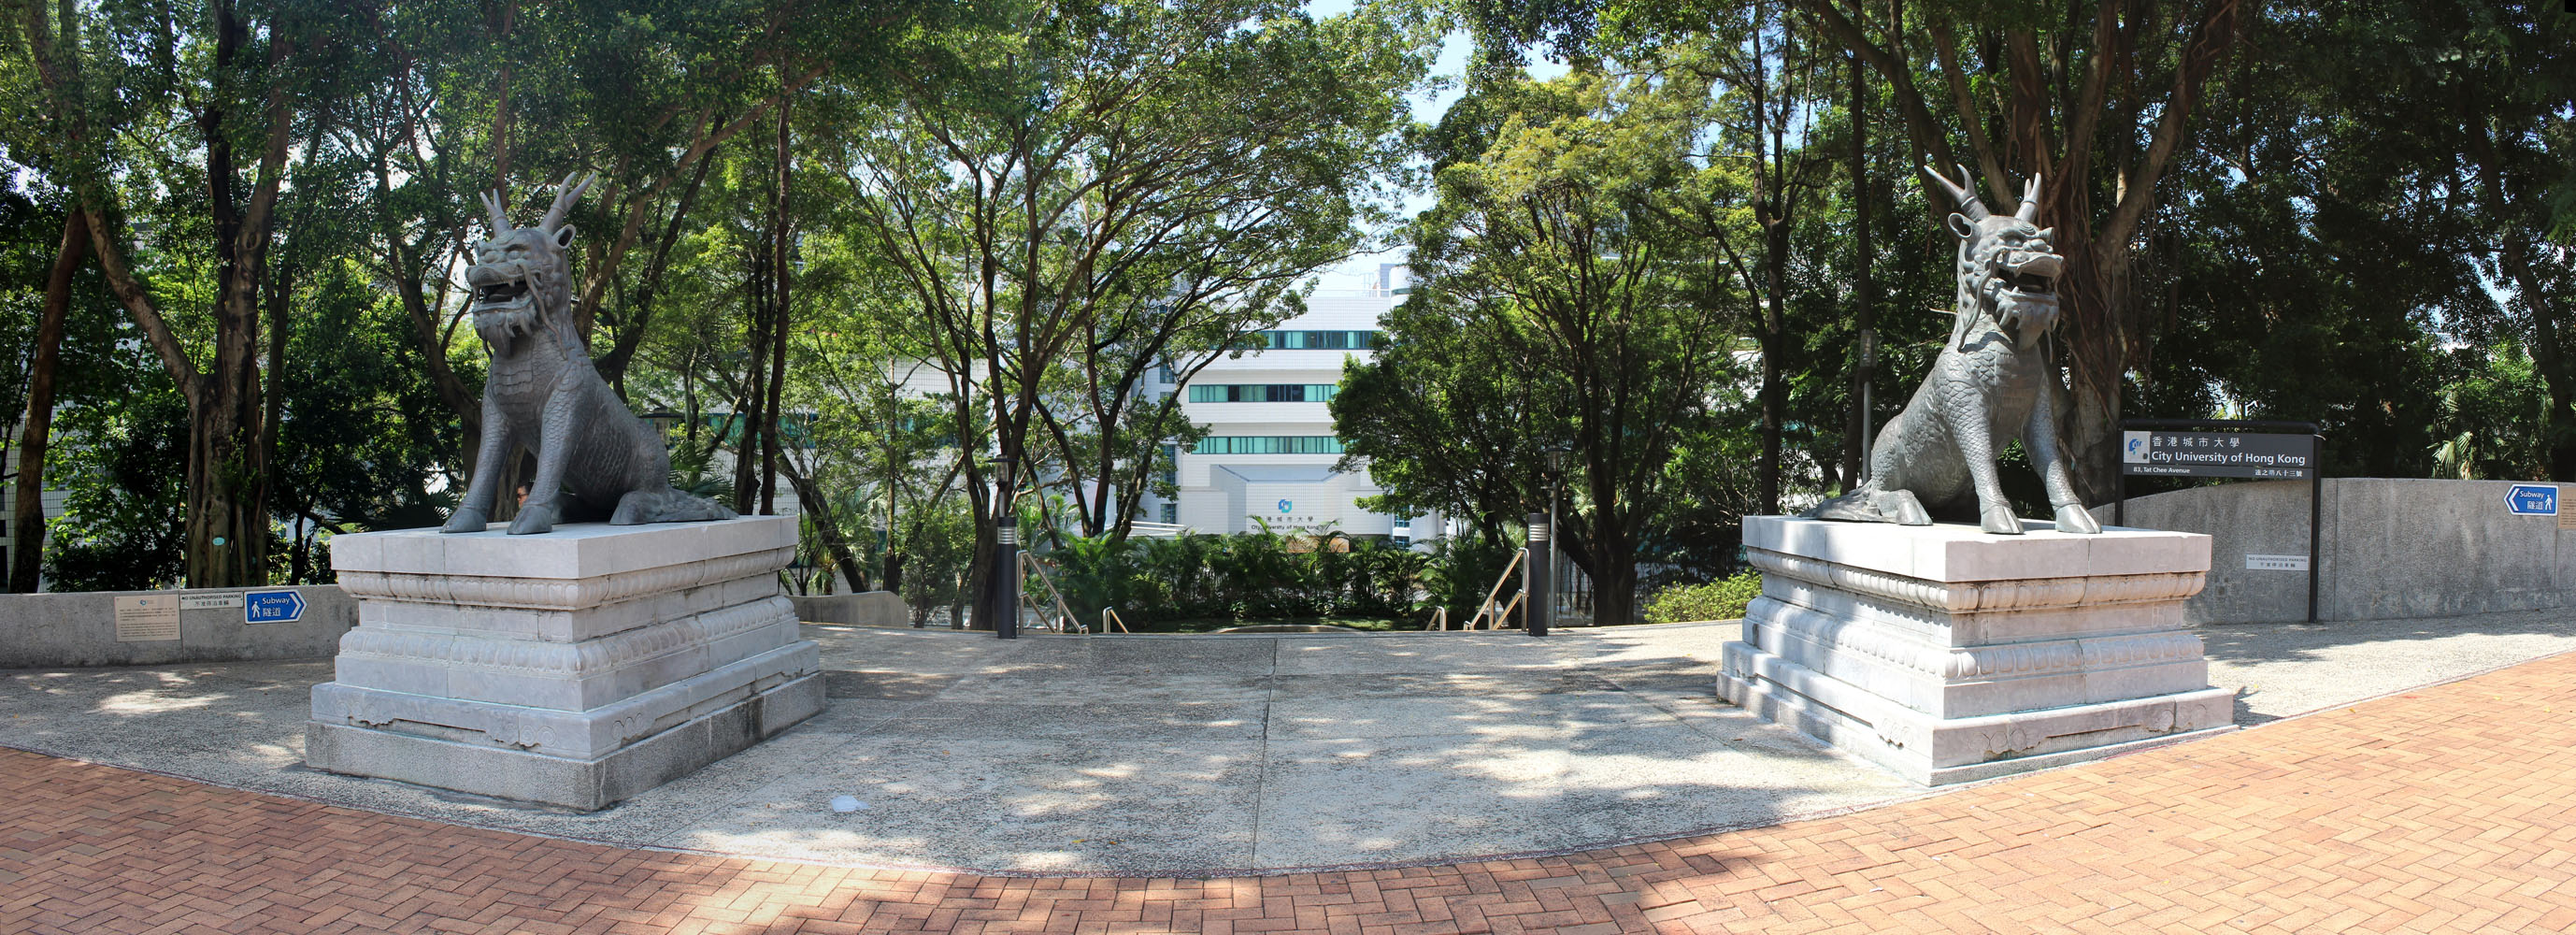 Photo 2: City University of Hong Kong